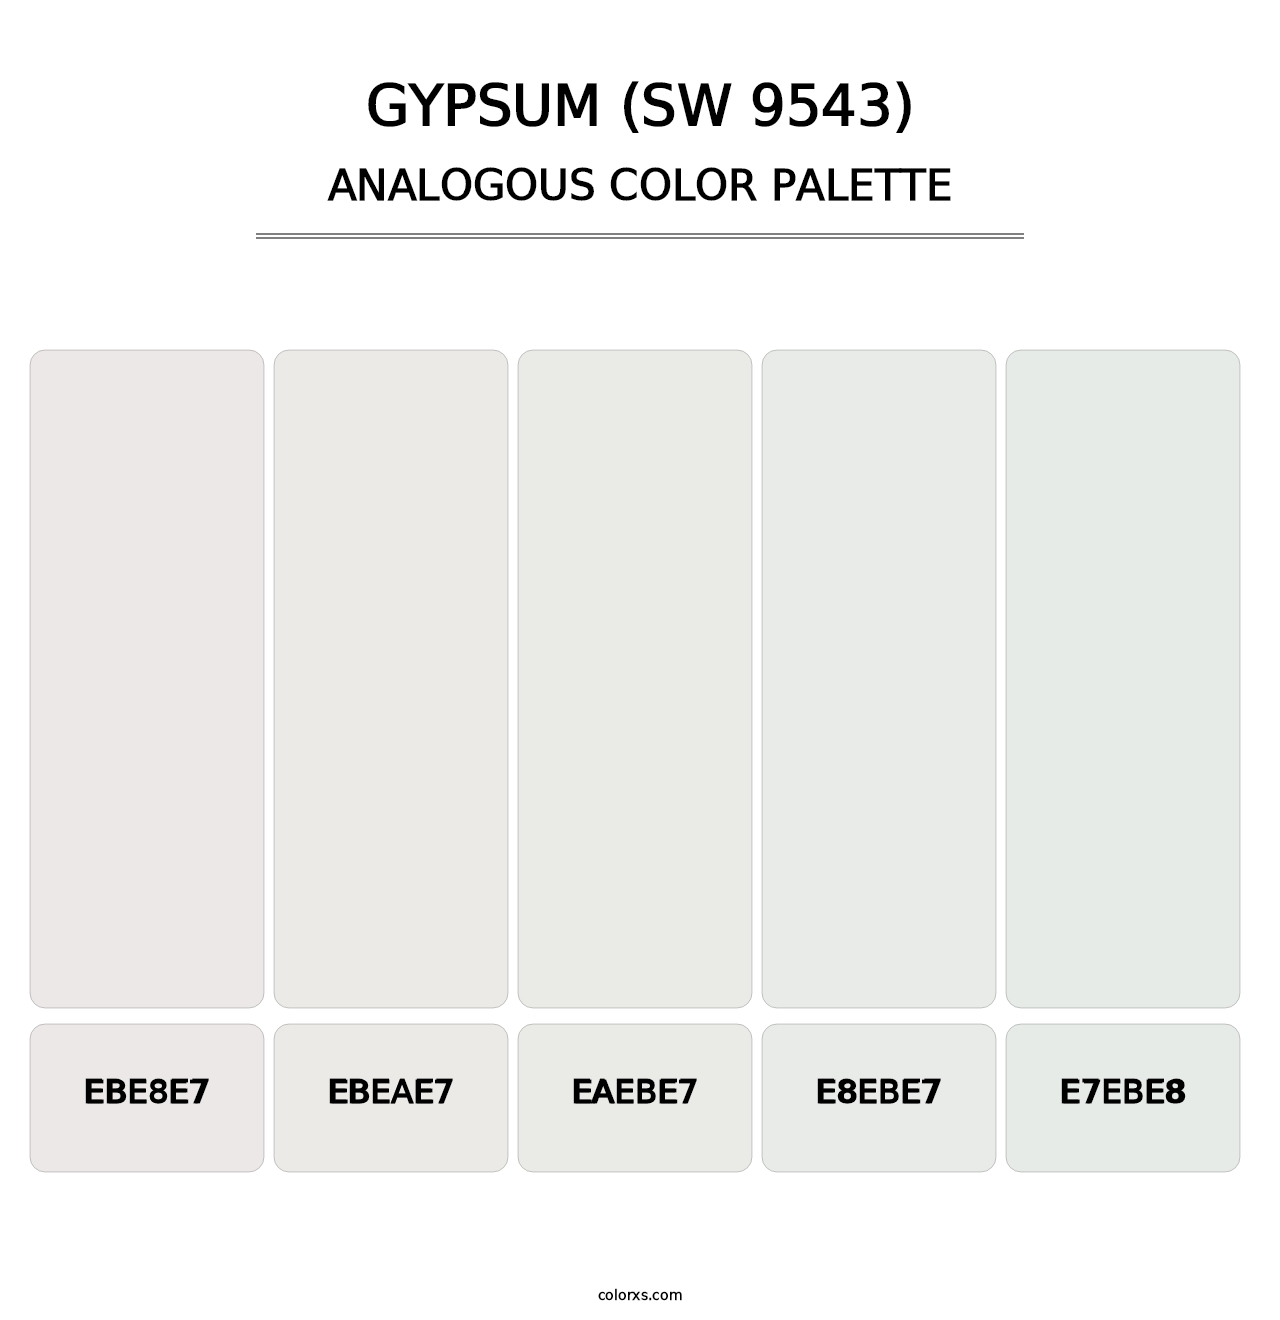 Gypsum (SW 9543) - Analogous Color Palette